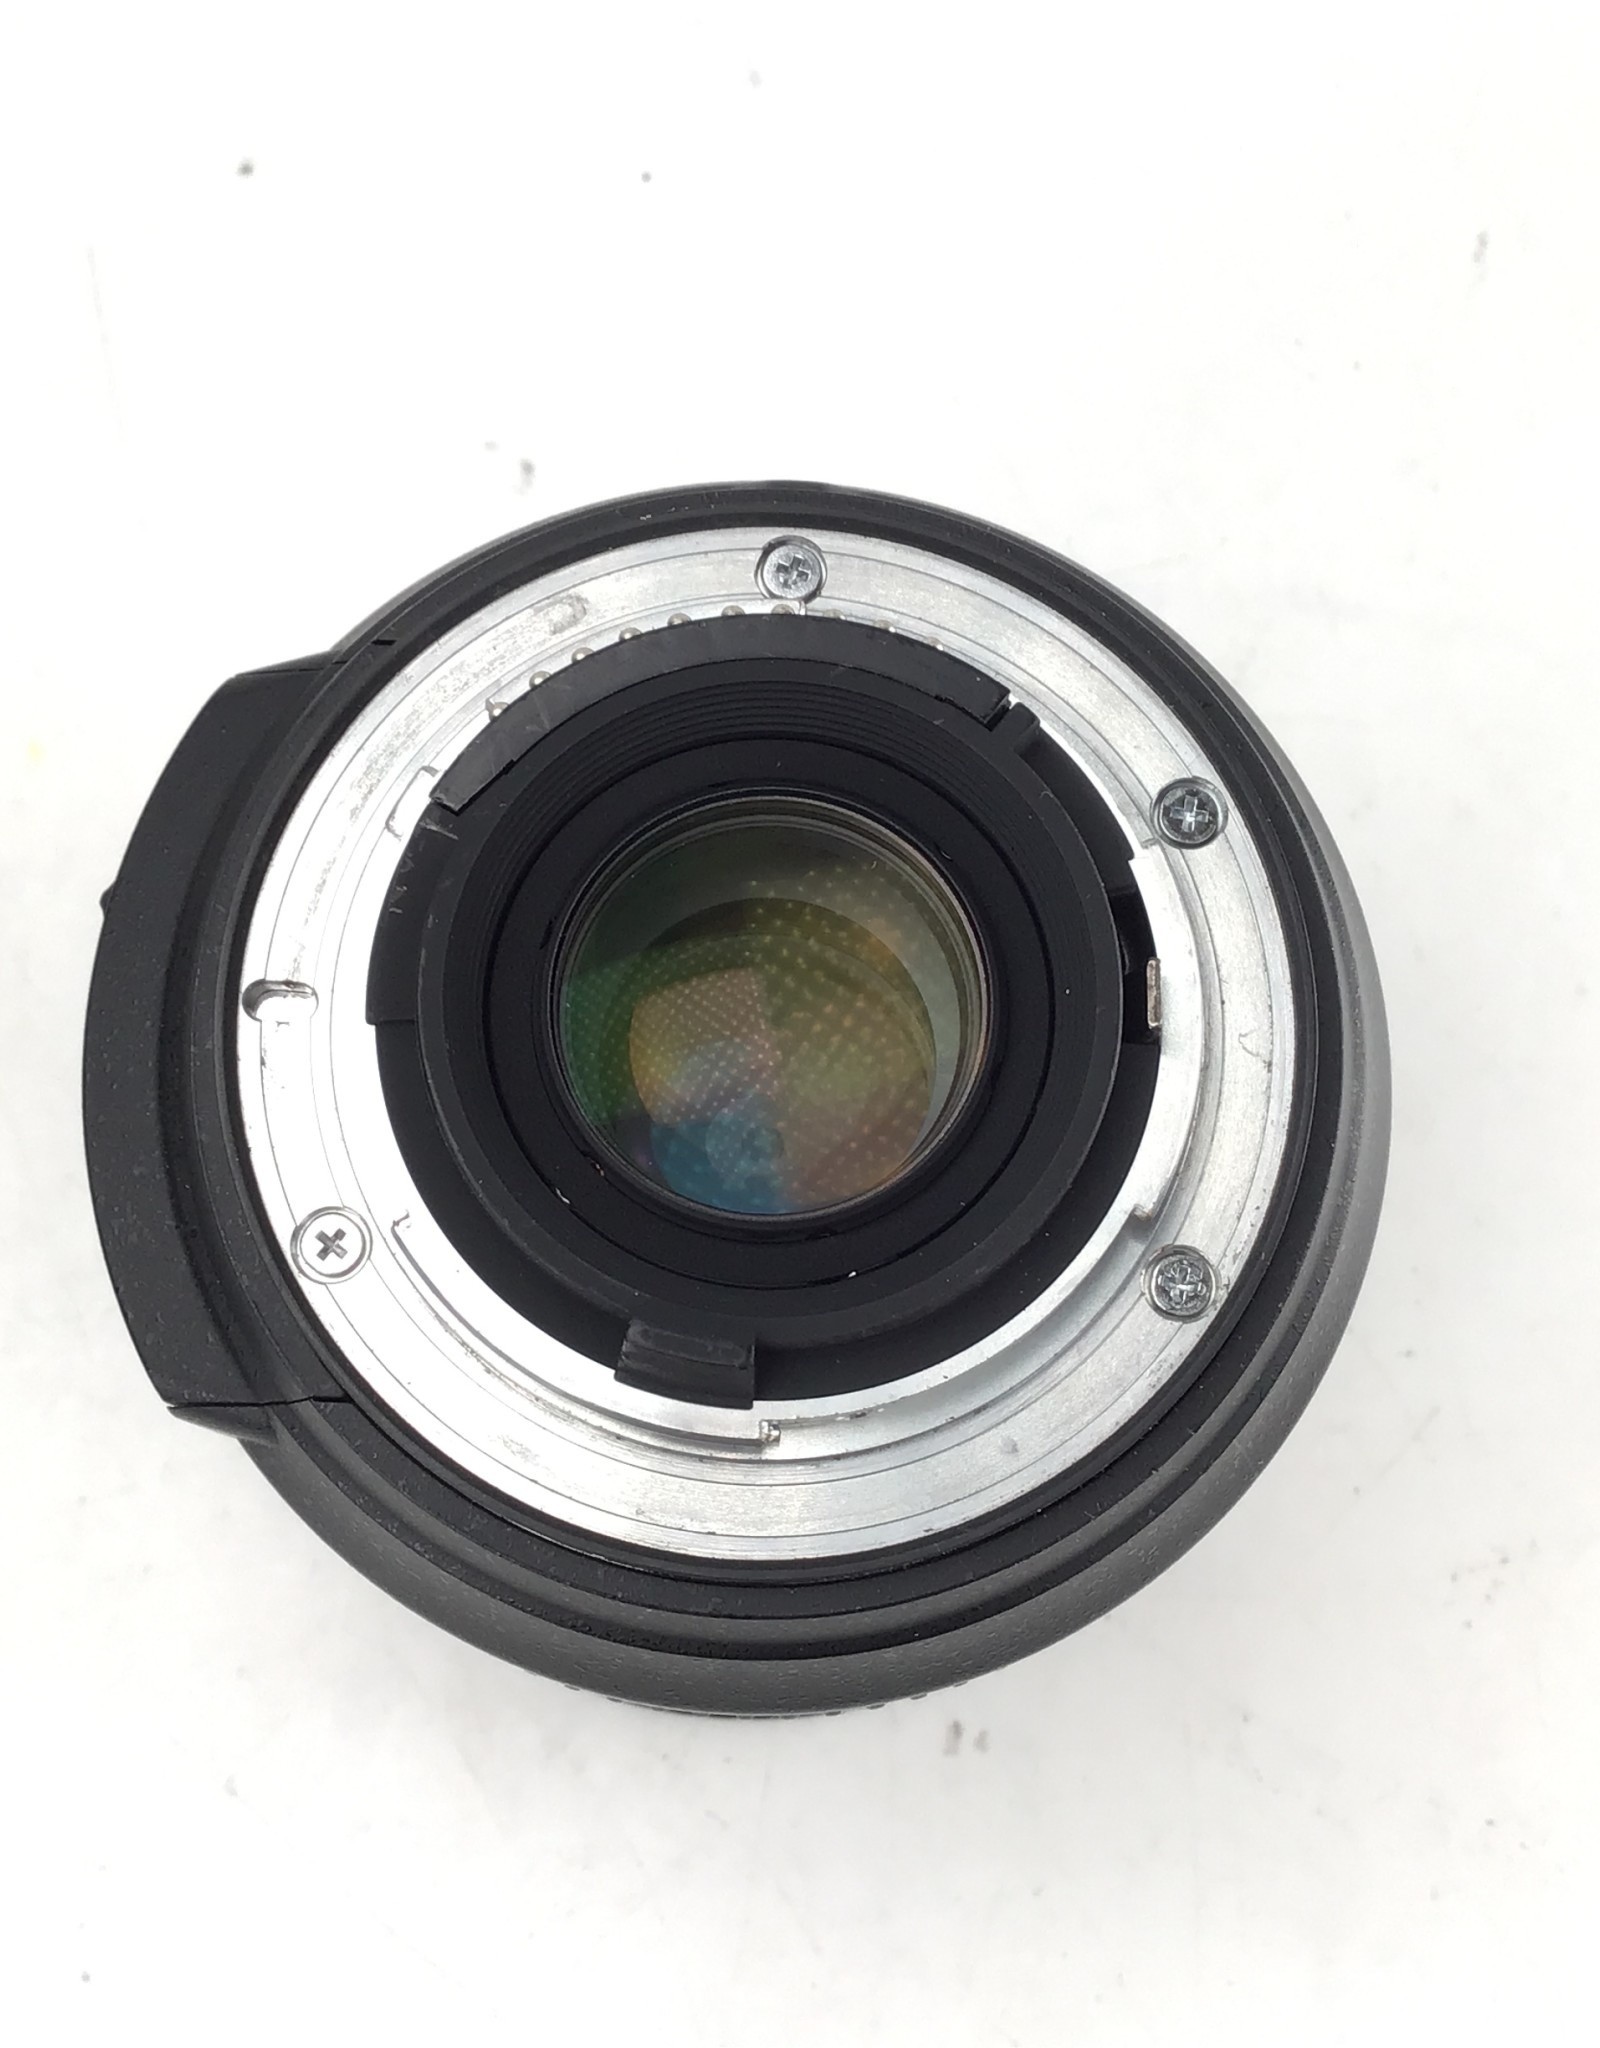 NIKON Nikon AF-S Nikkor 18-200mm f3.5-5.6 G DX VR Lens Used Good